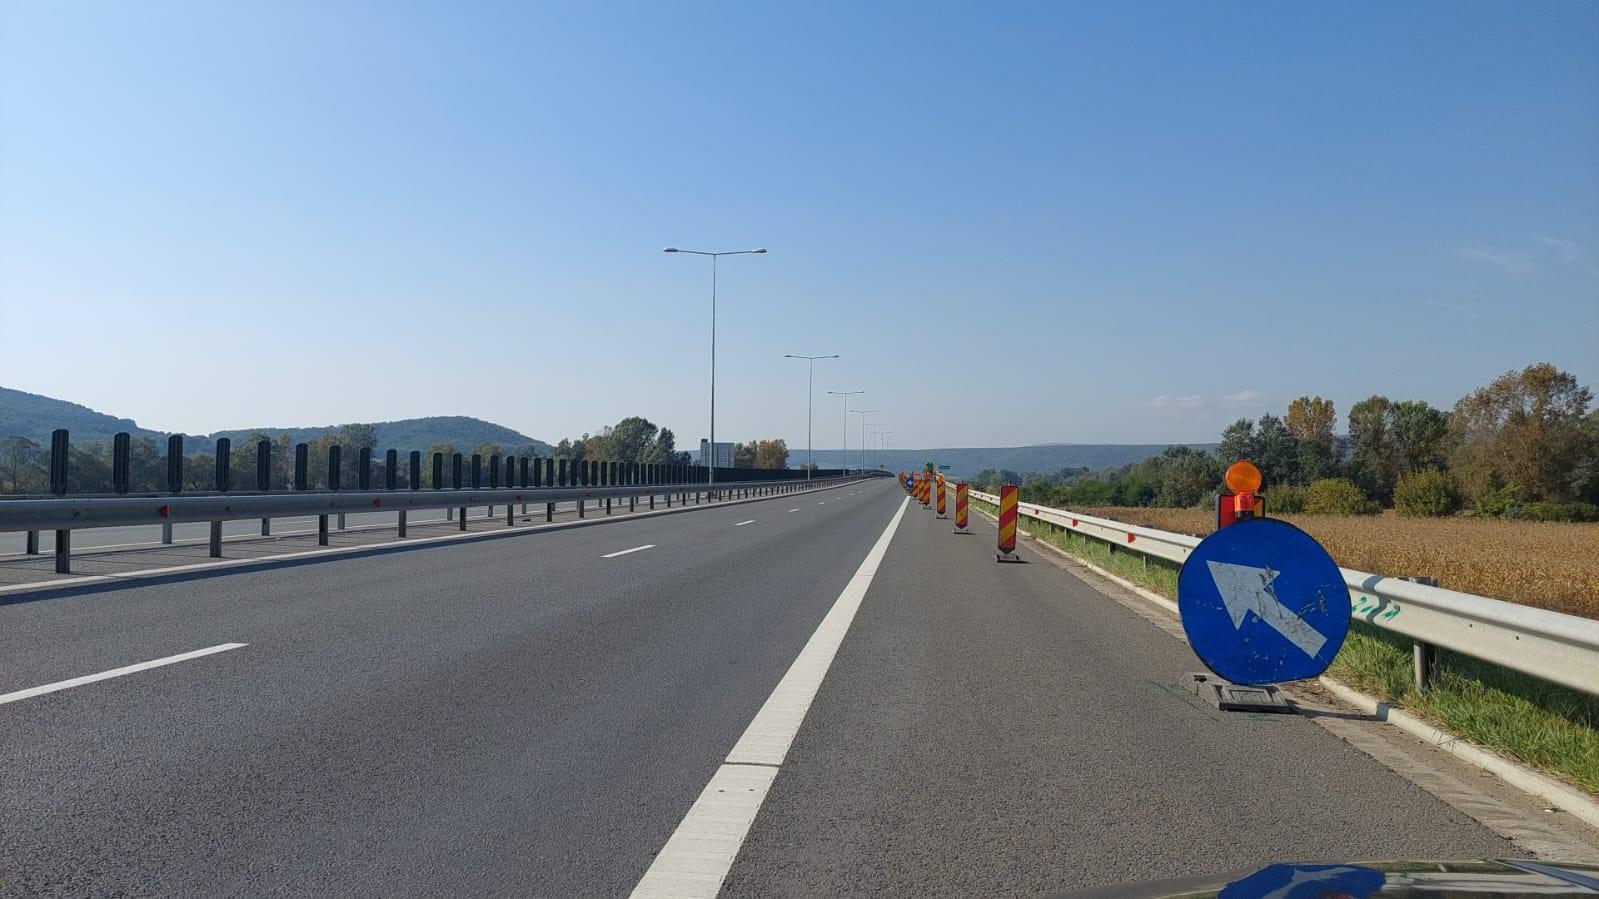 Circulație restricționată pe Autostrada Transilvania. Se efectuează lucrări de reparații